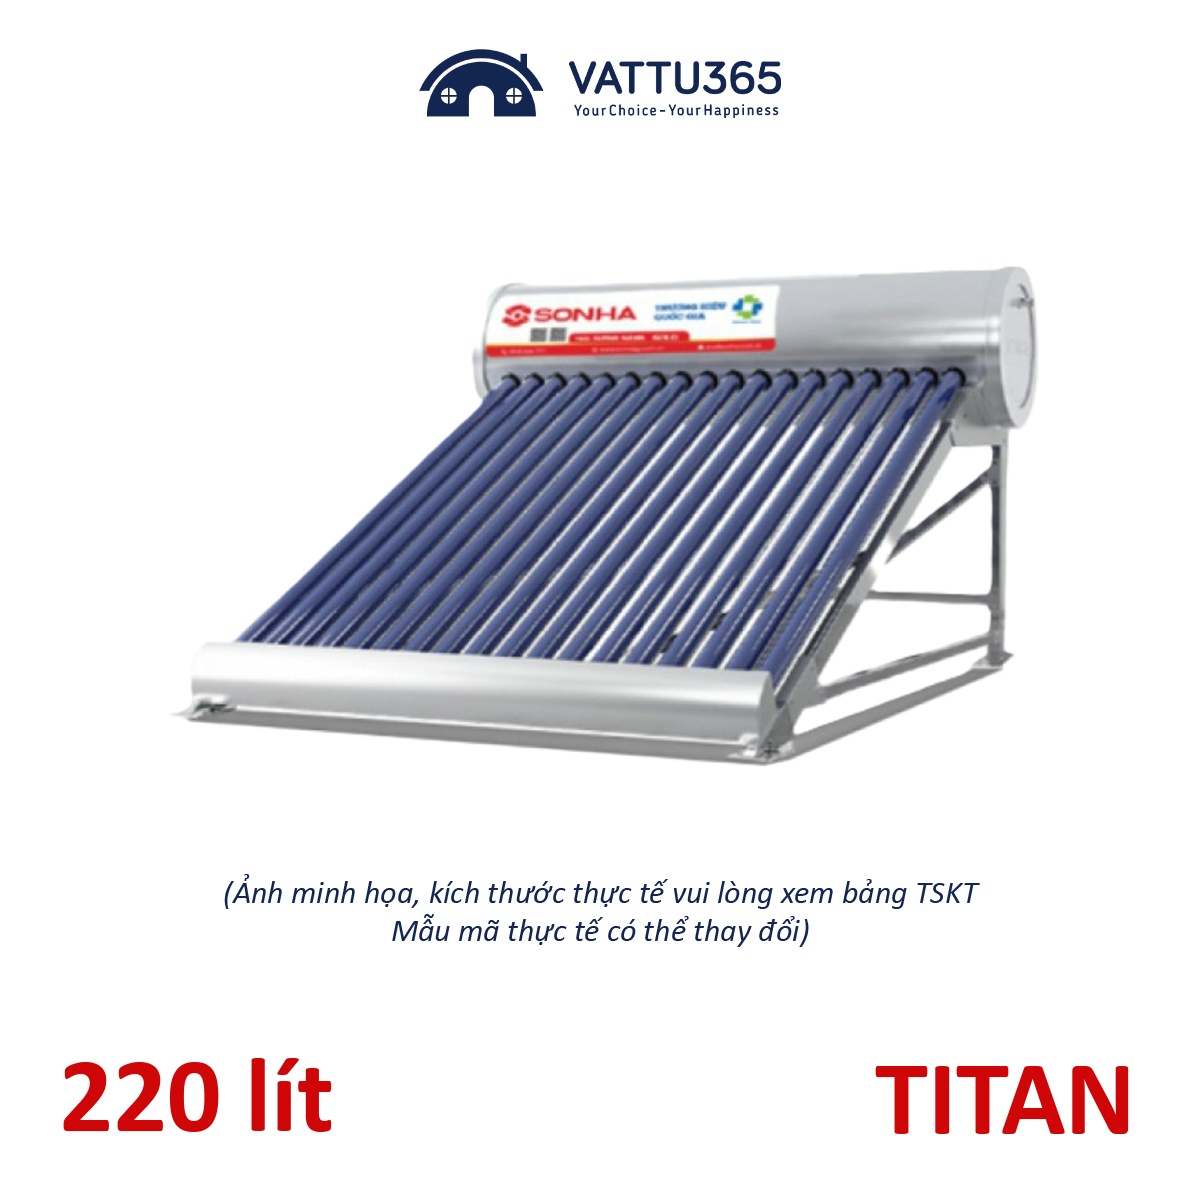 Máy nước nóng năng lượng mặt trời Sơn Hà TDN TITAN 220 Lít